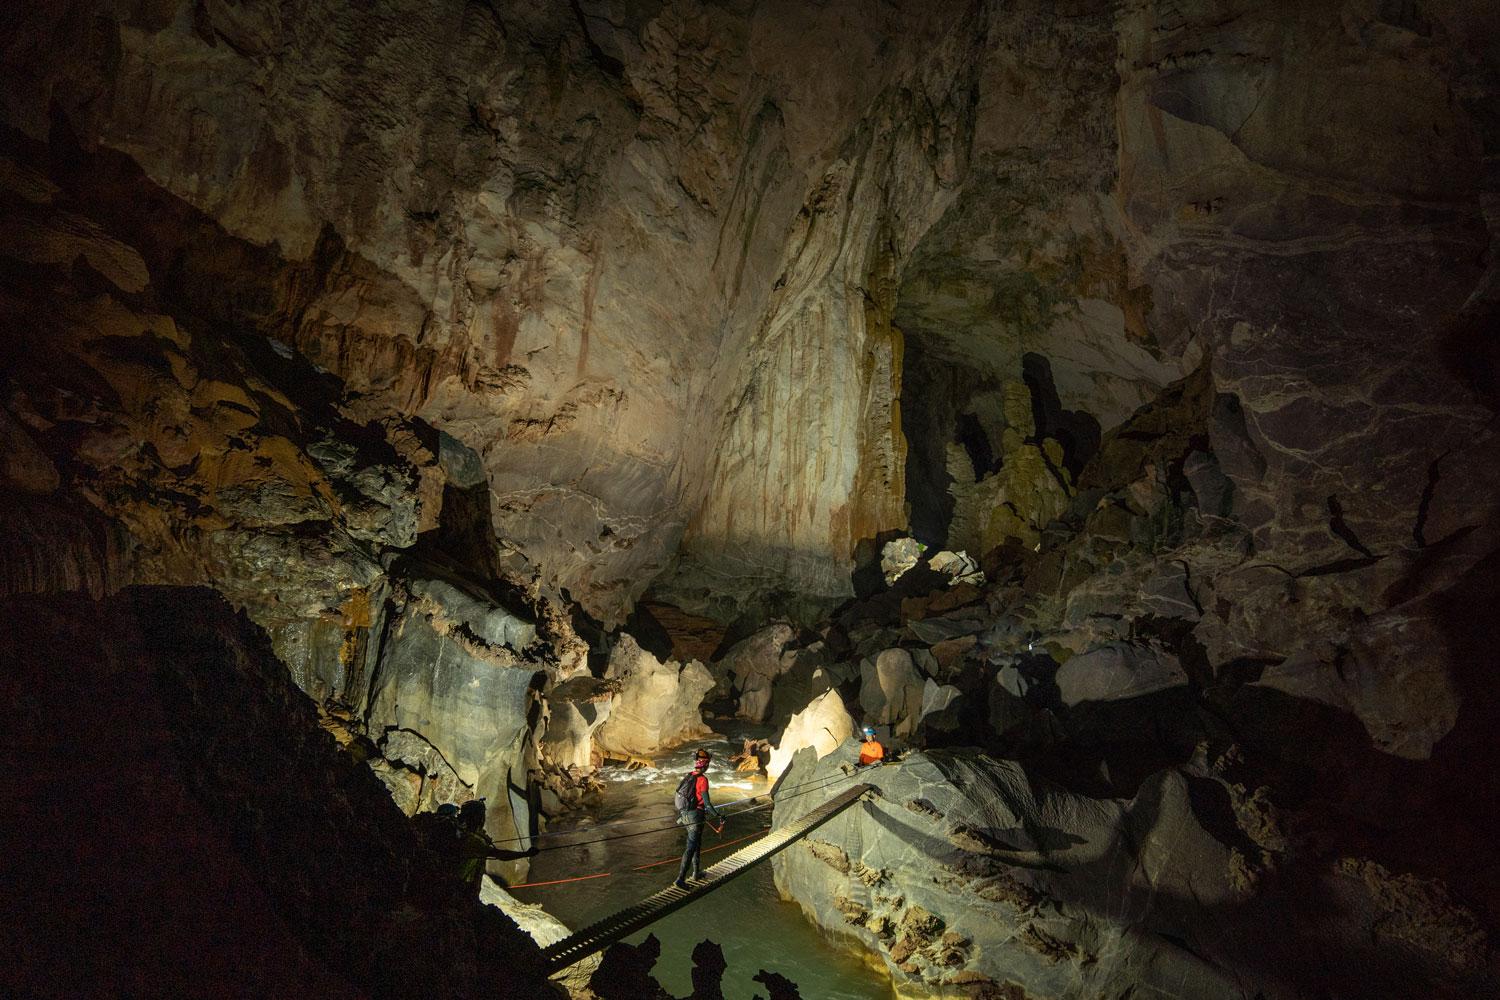 Cea mai mare peșteră din lume are peste 3 milioane de ani vechime. Aici ar putea încăpea un zgârie-nori cu 40 de etaje